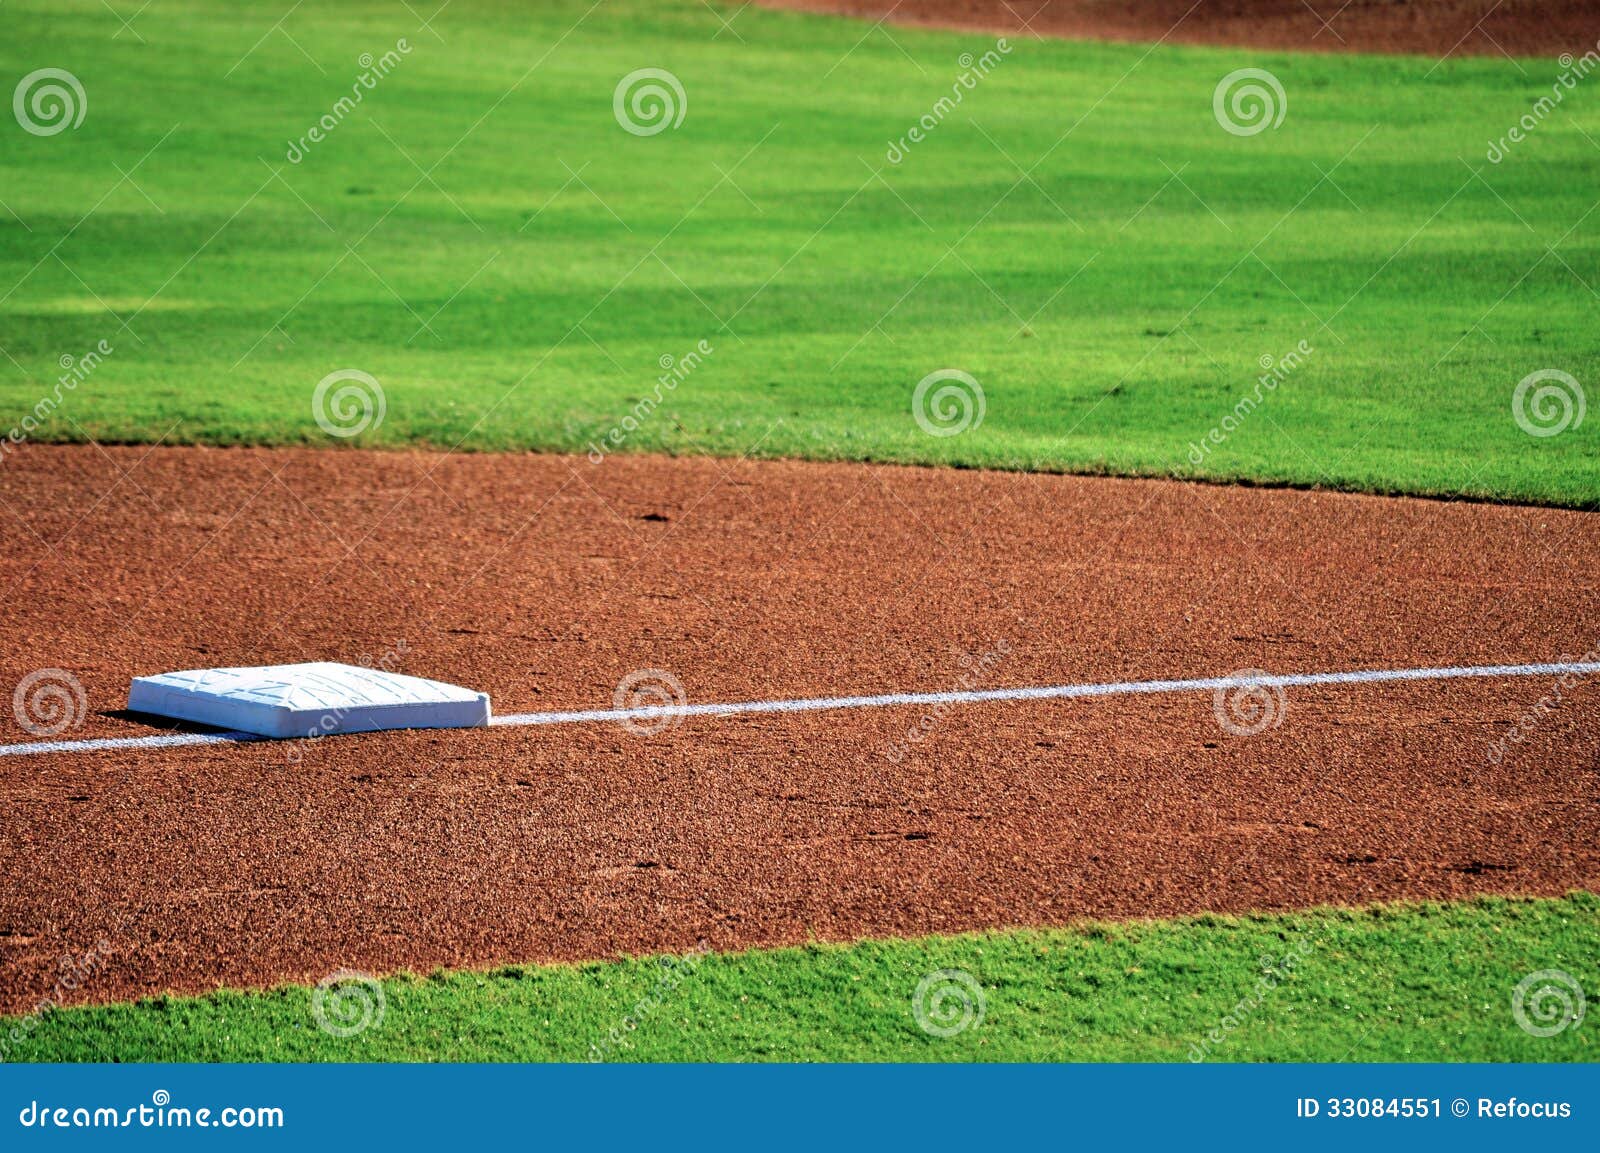 baseball base